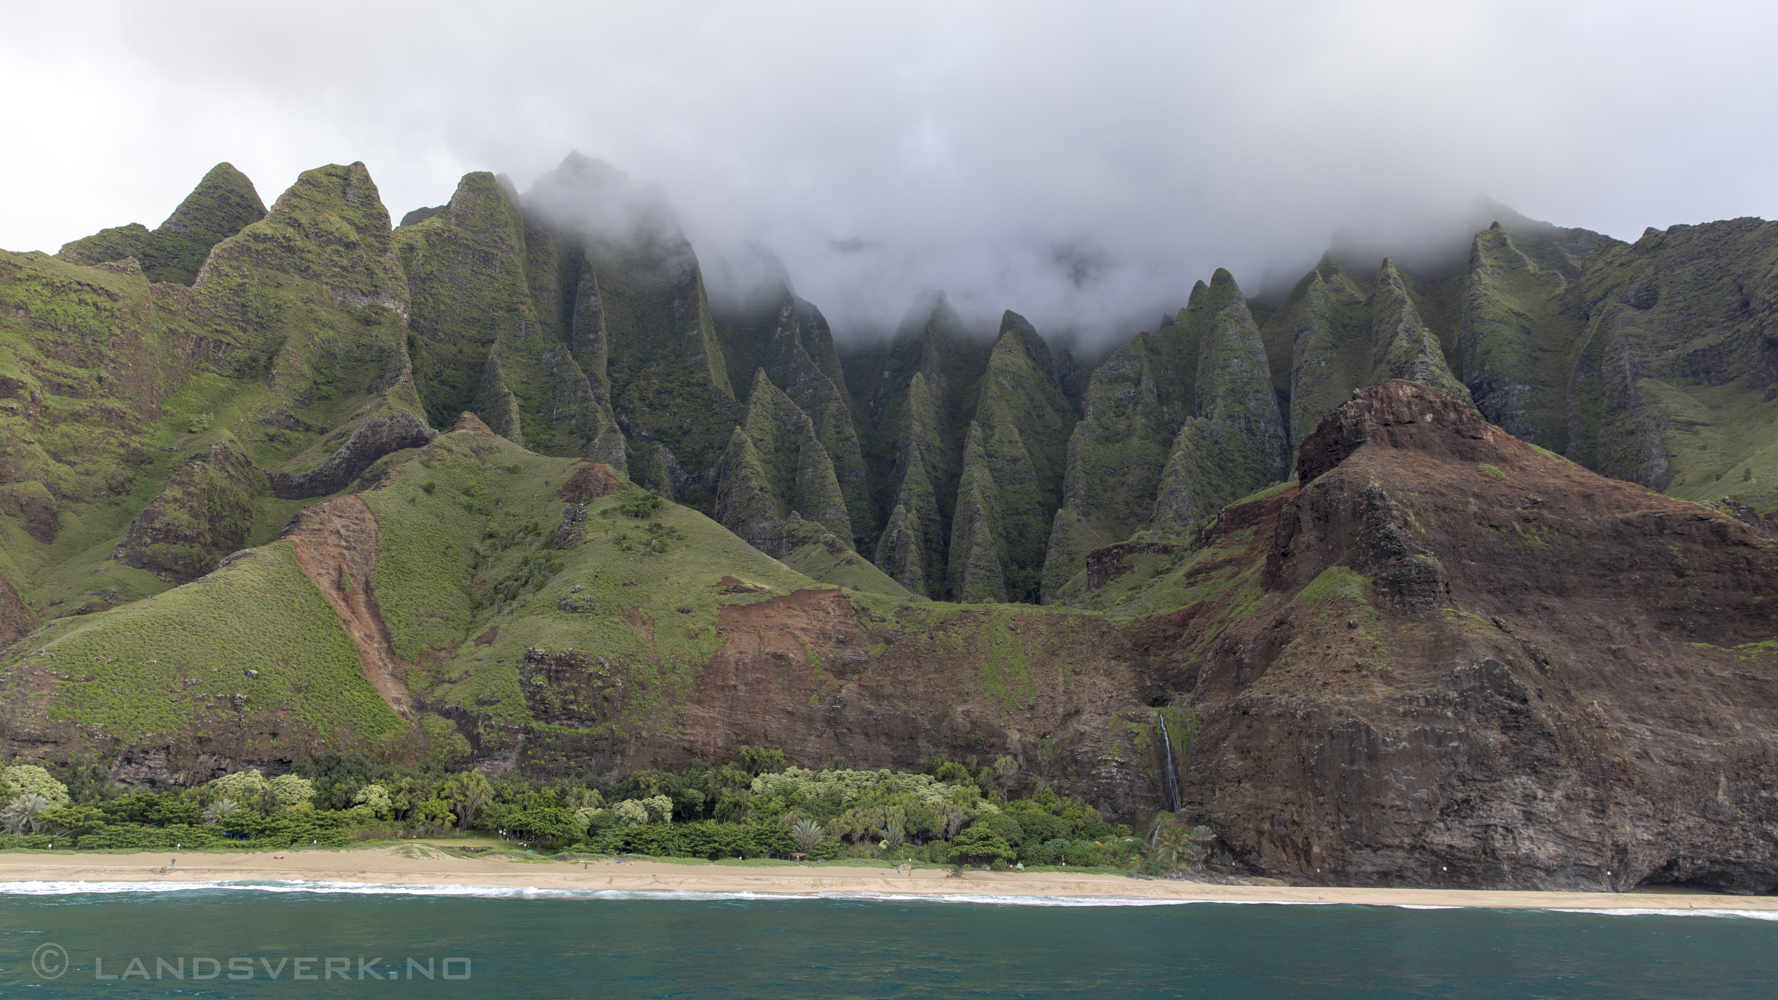 Nā Pali Coast. Kauai, Hawaii. 

(Canon EOS 5D Mark IV / Canon EF 24-70mm f/2.8 L II USM)